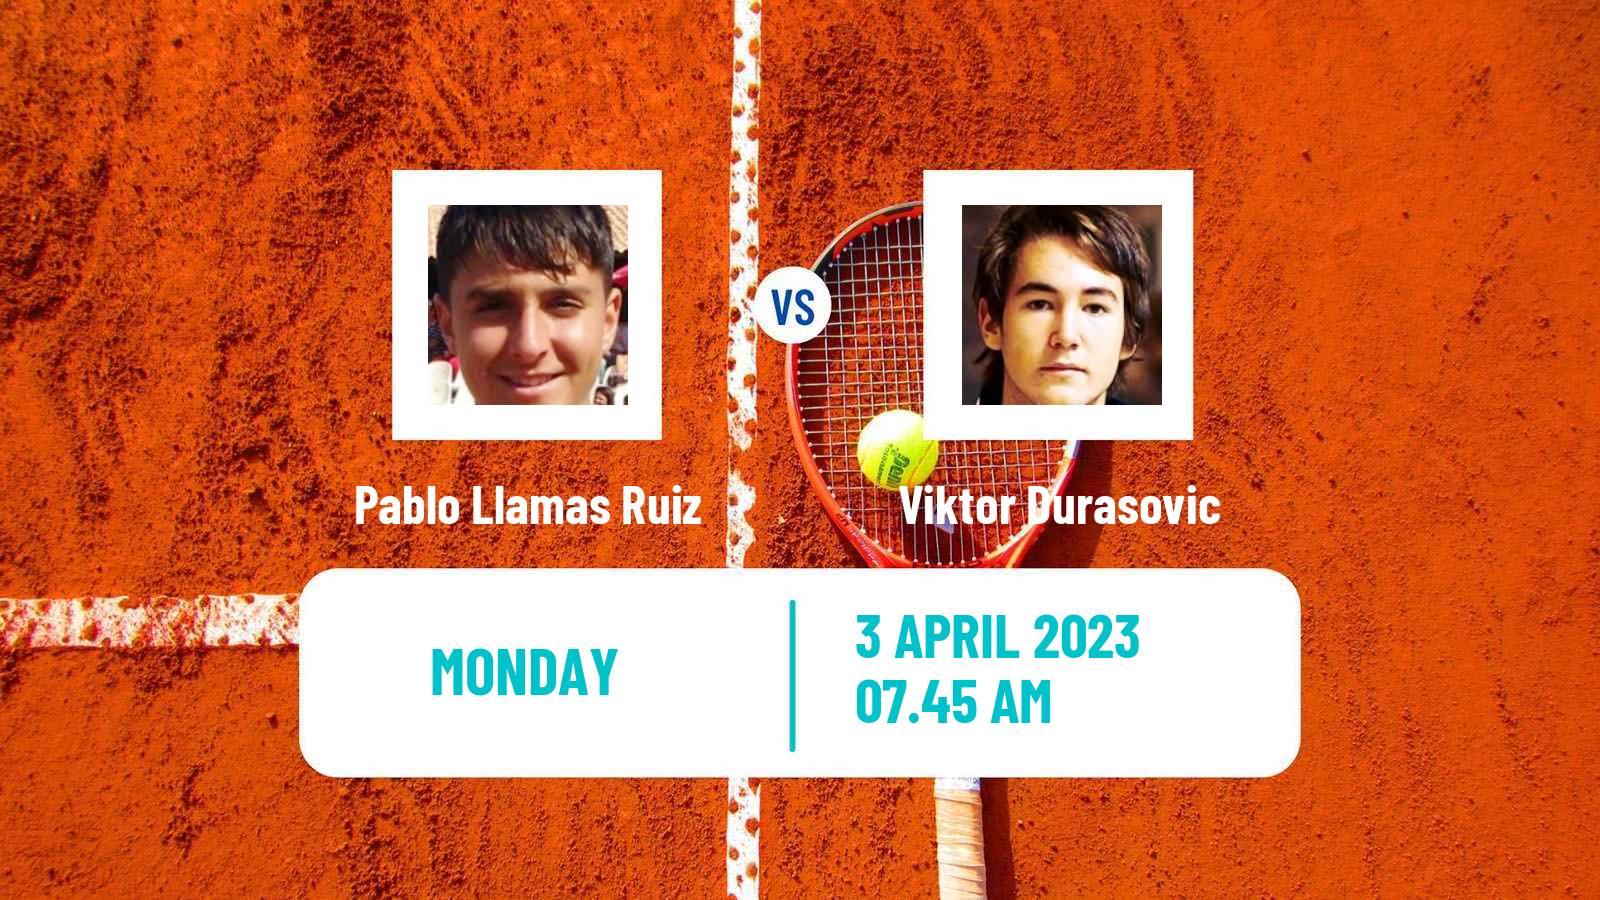 Tennis ATP Challenger Pablo Llamas Ruiz - Viktor Durasovic